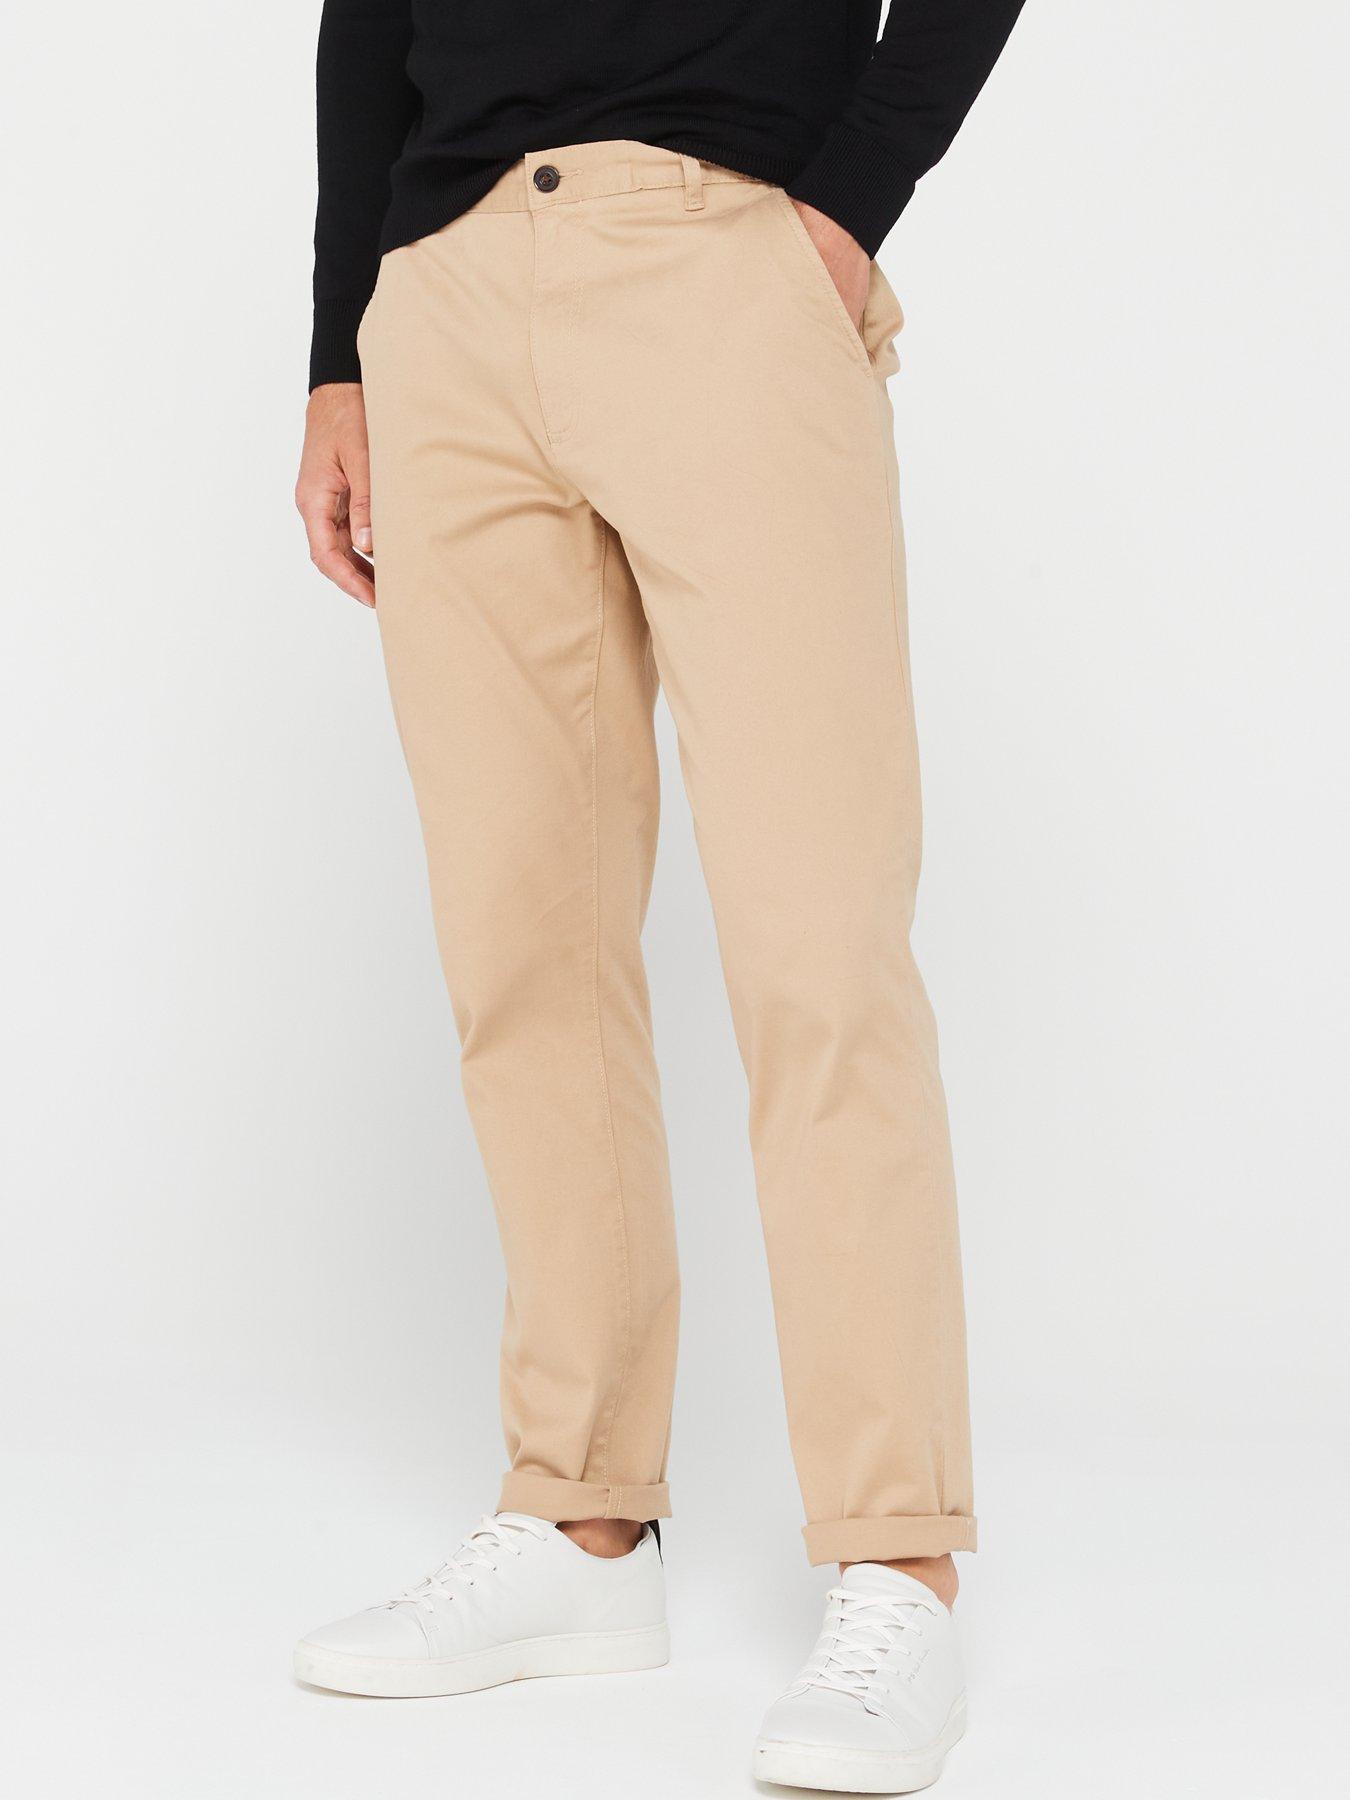 TOG24 Women's Milton Skinny Fit Waterproof Walking Trousers - Khaki